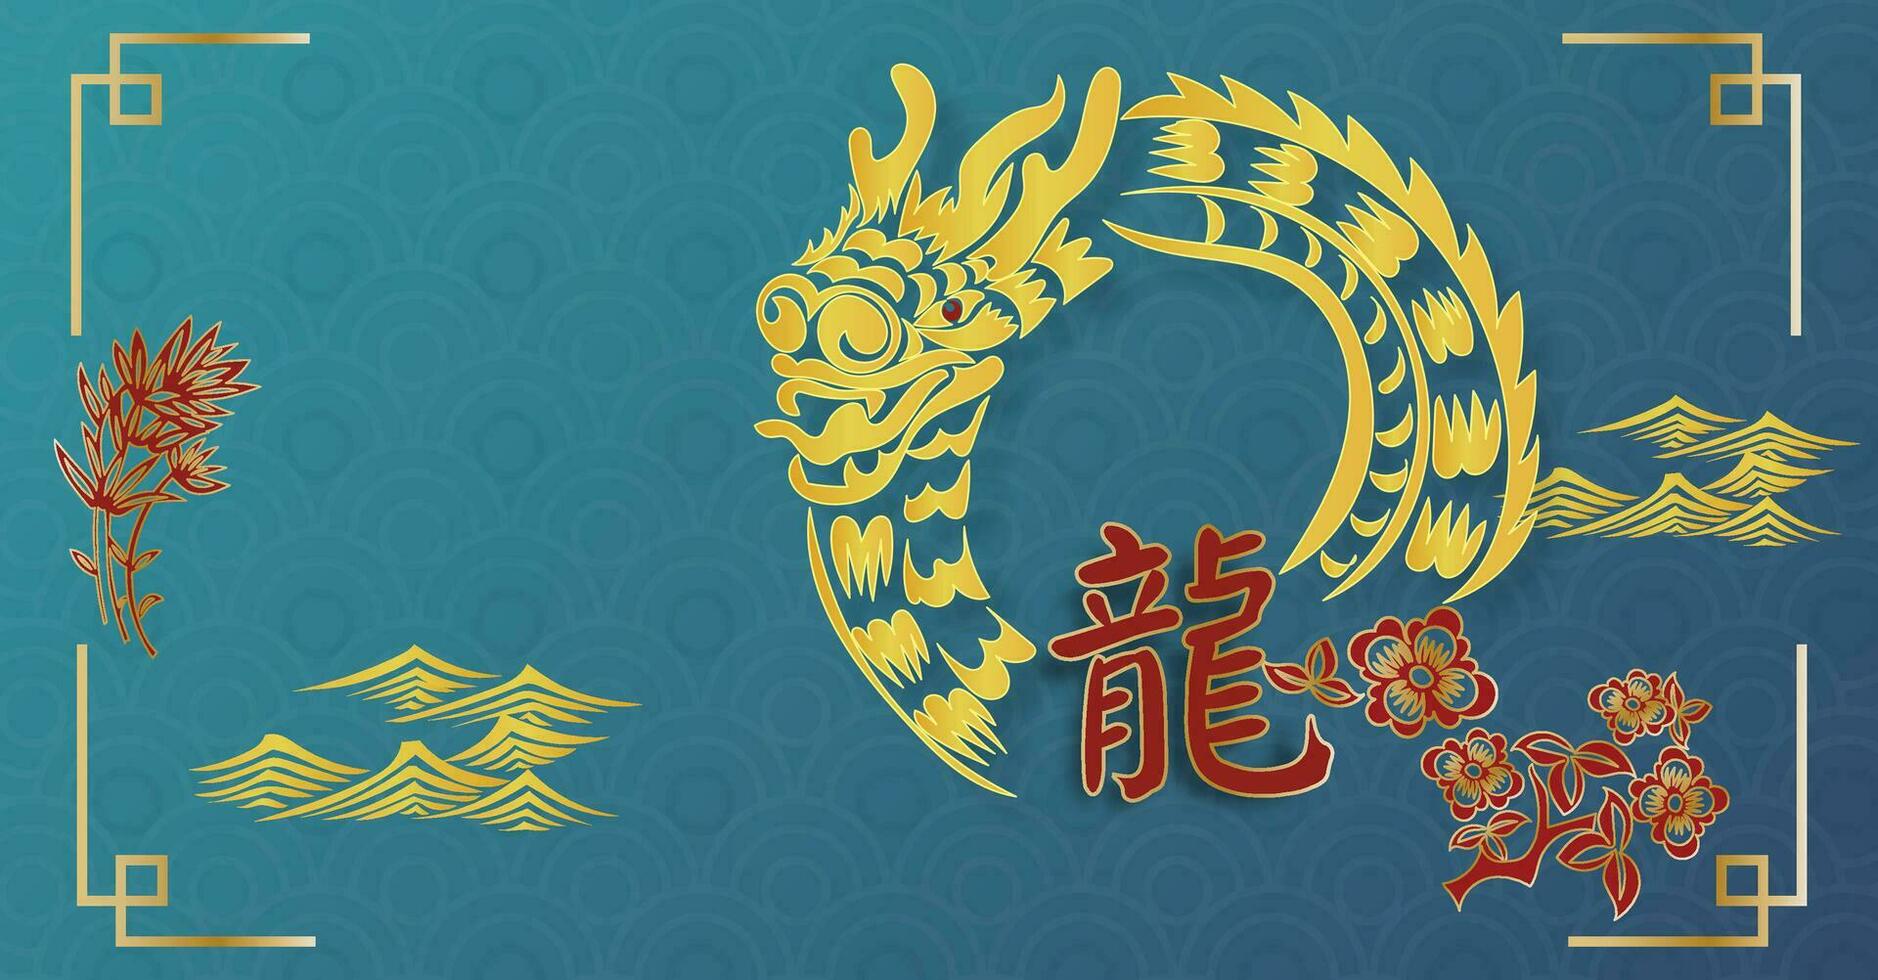 chinois Nouveau année 2024, le année de le dragon, vecteur